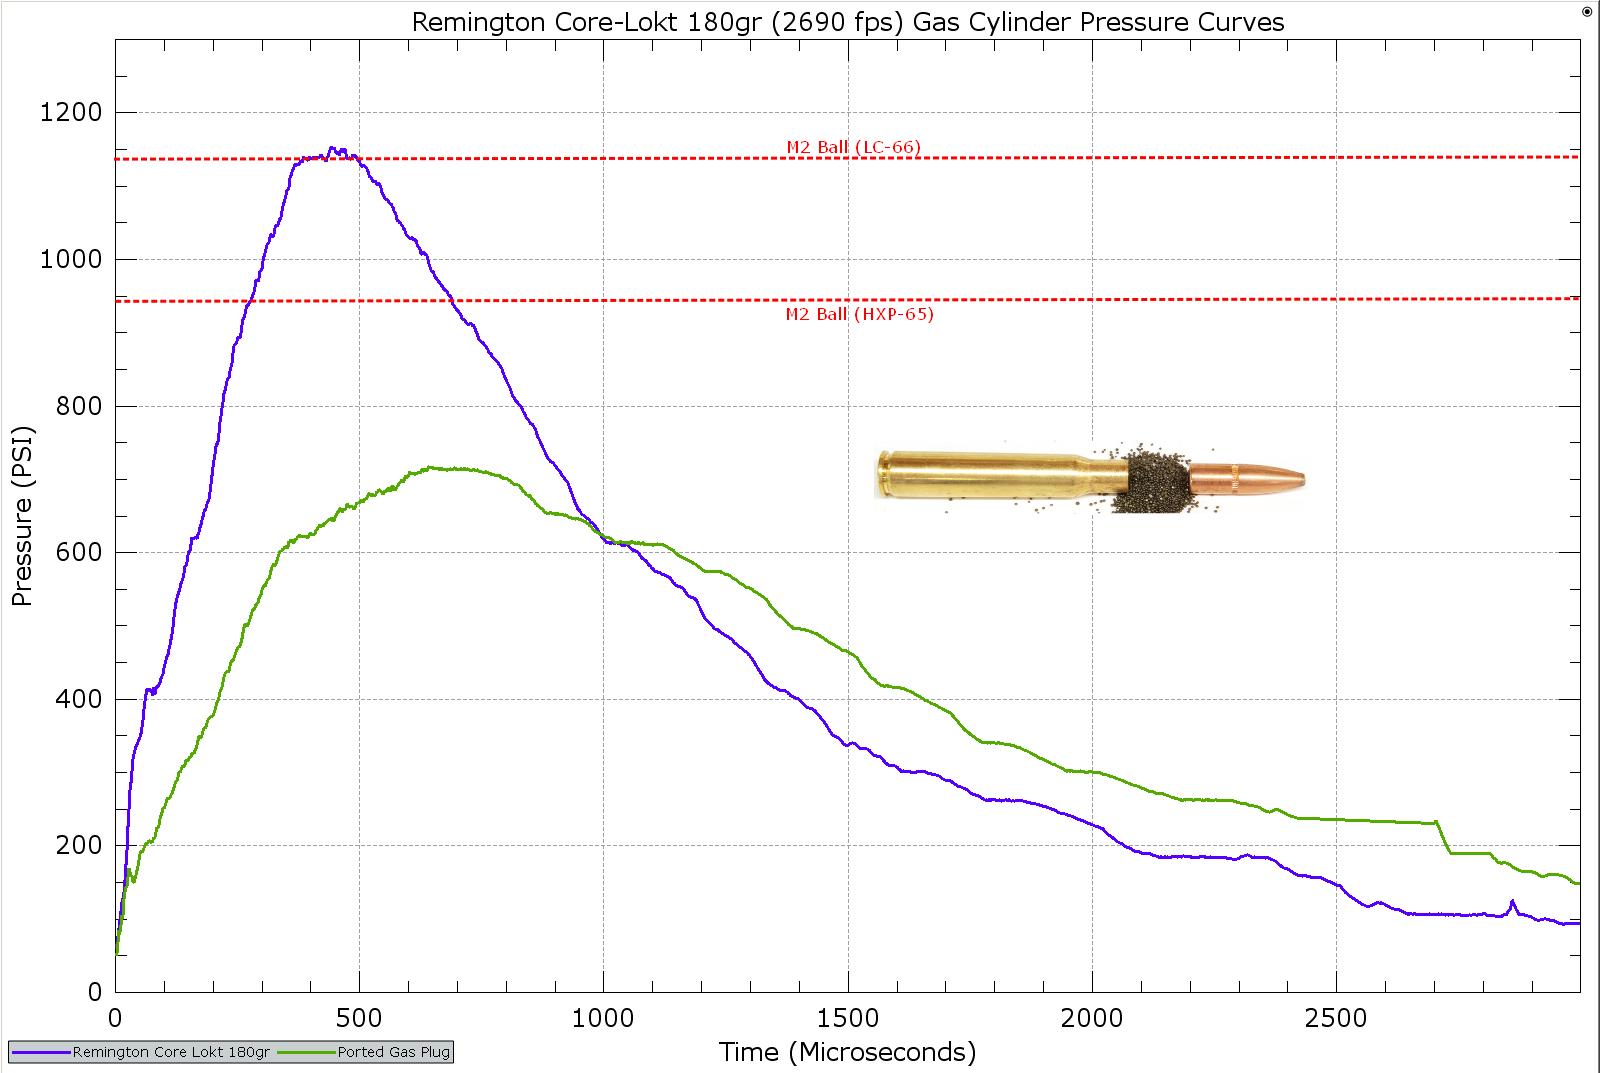 Remington Express Core-Lokt 150gr Lot #K06 JDI. 